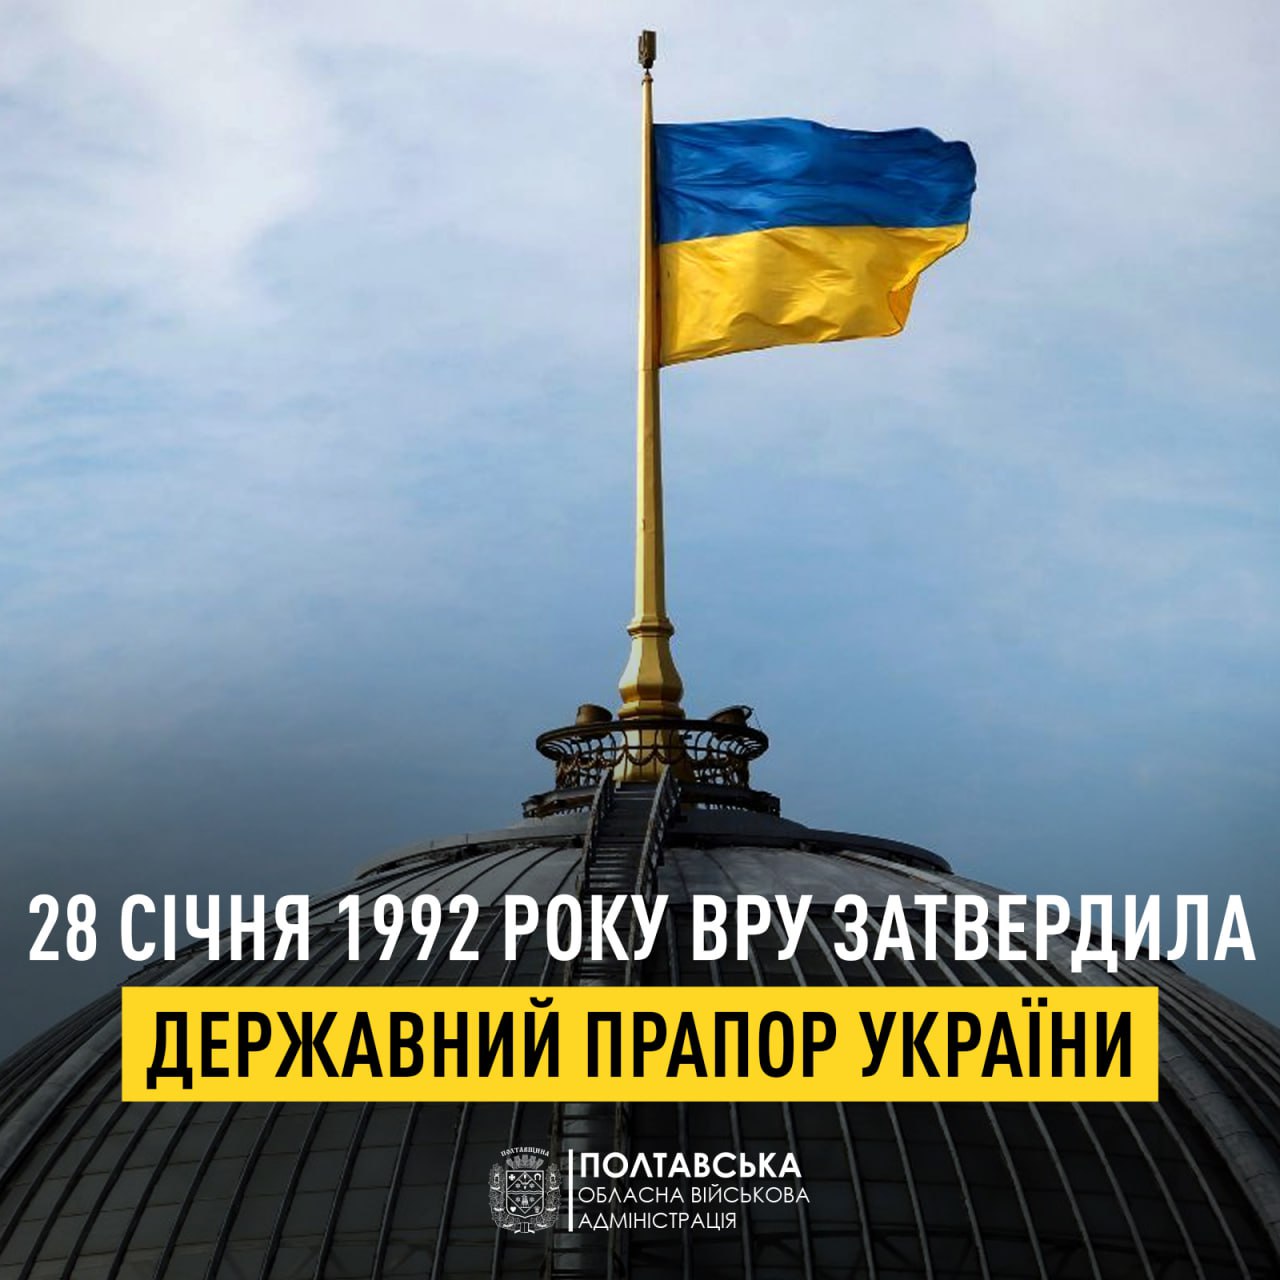 Звернення начальника Полтавської ОВА Дмитра Луніна з нагоди затвердження синьо-жовтого стягу як Державного Прапора України